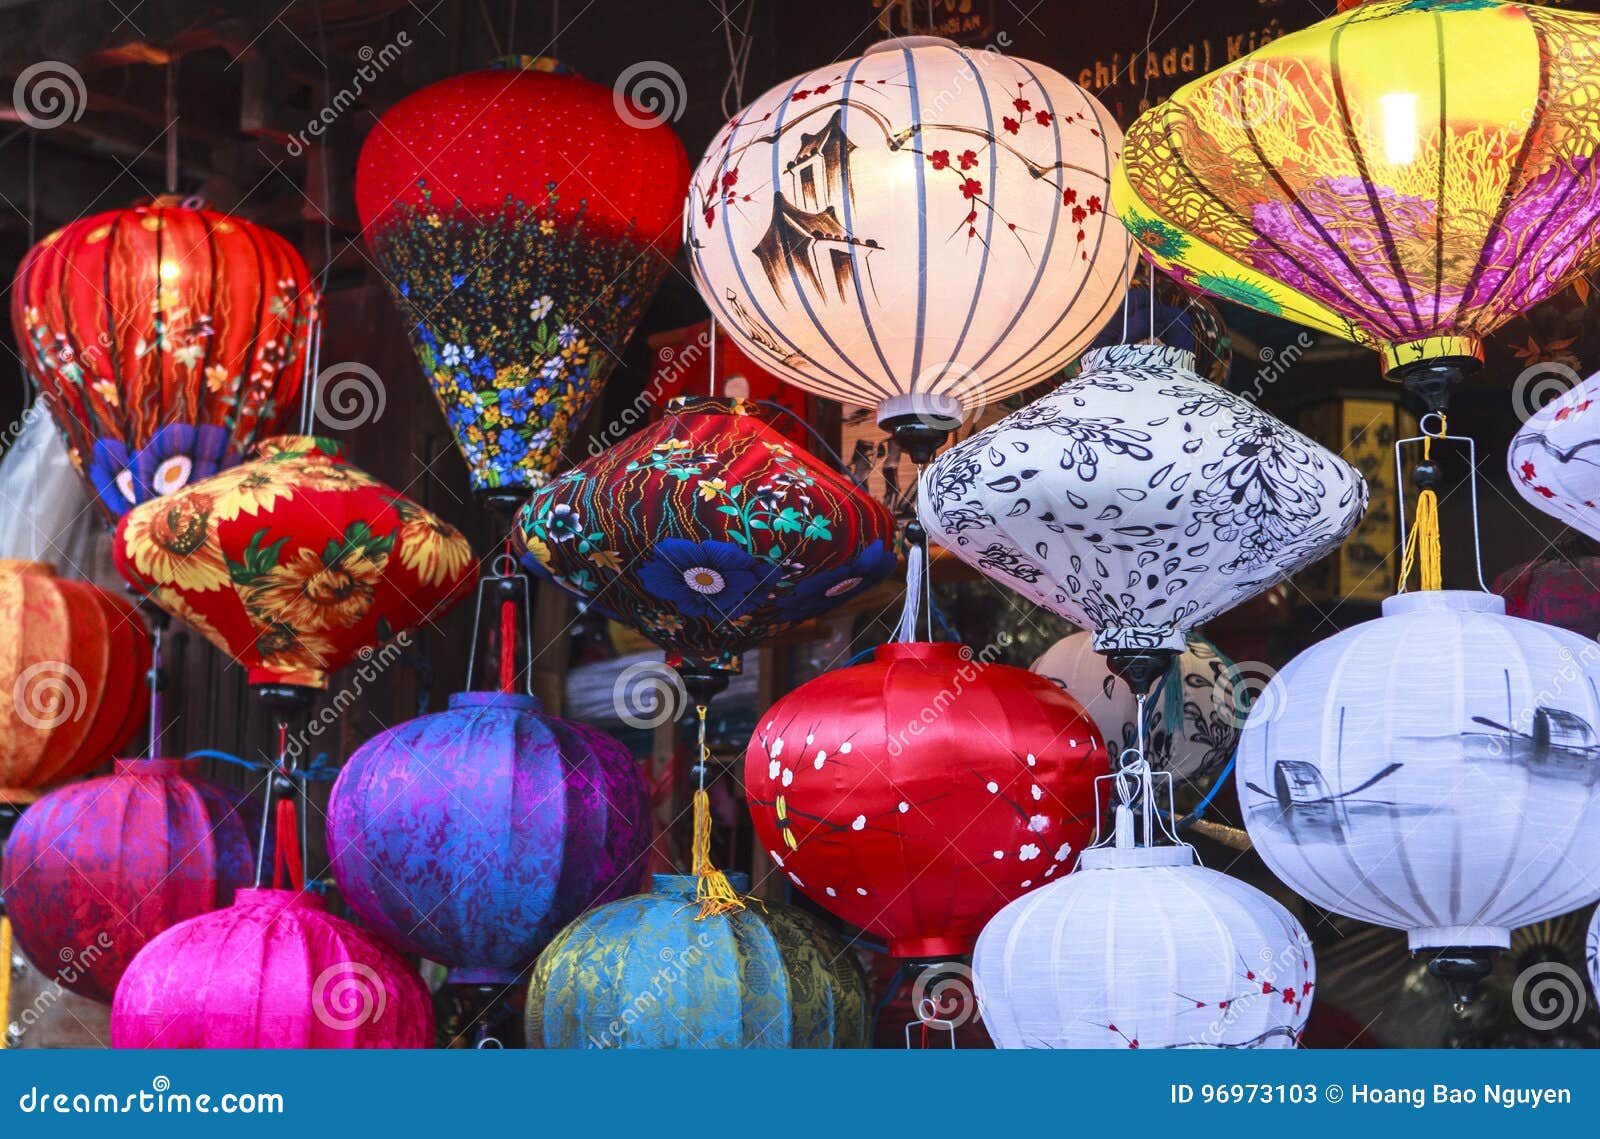 lanterns in old street hoi an, vietnam